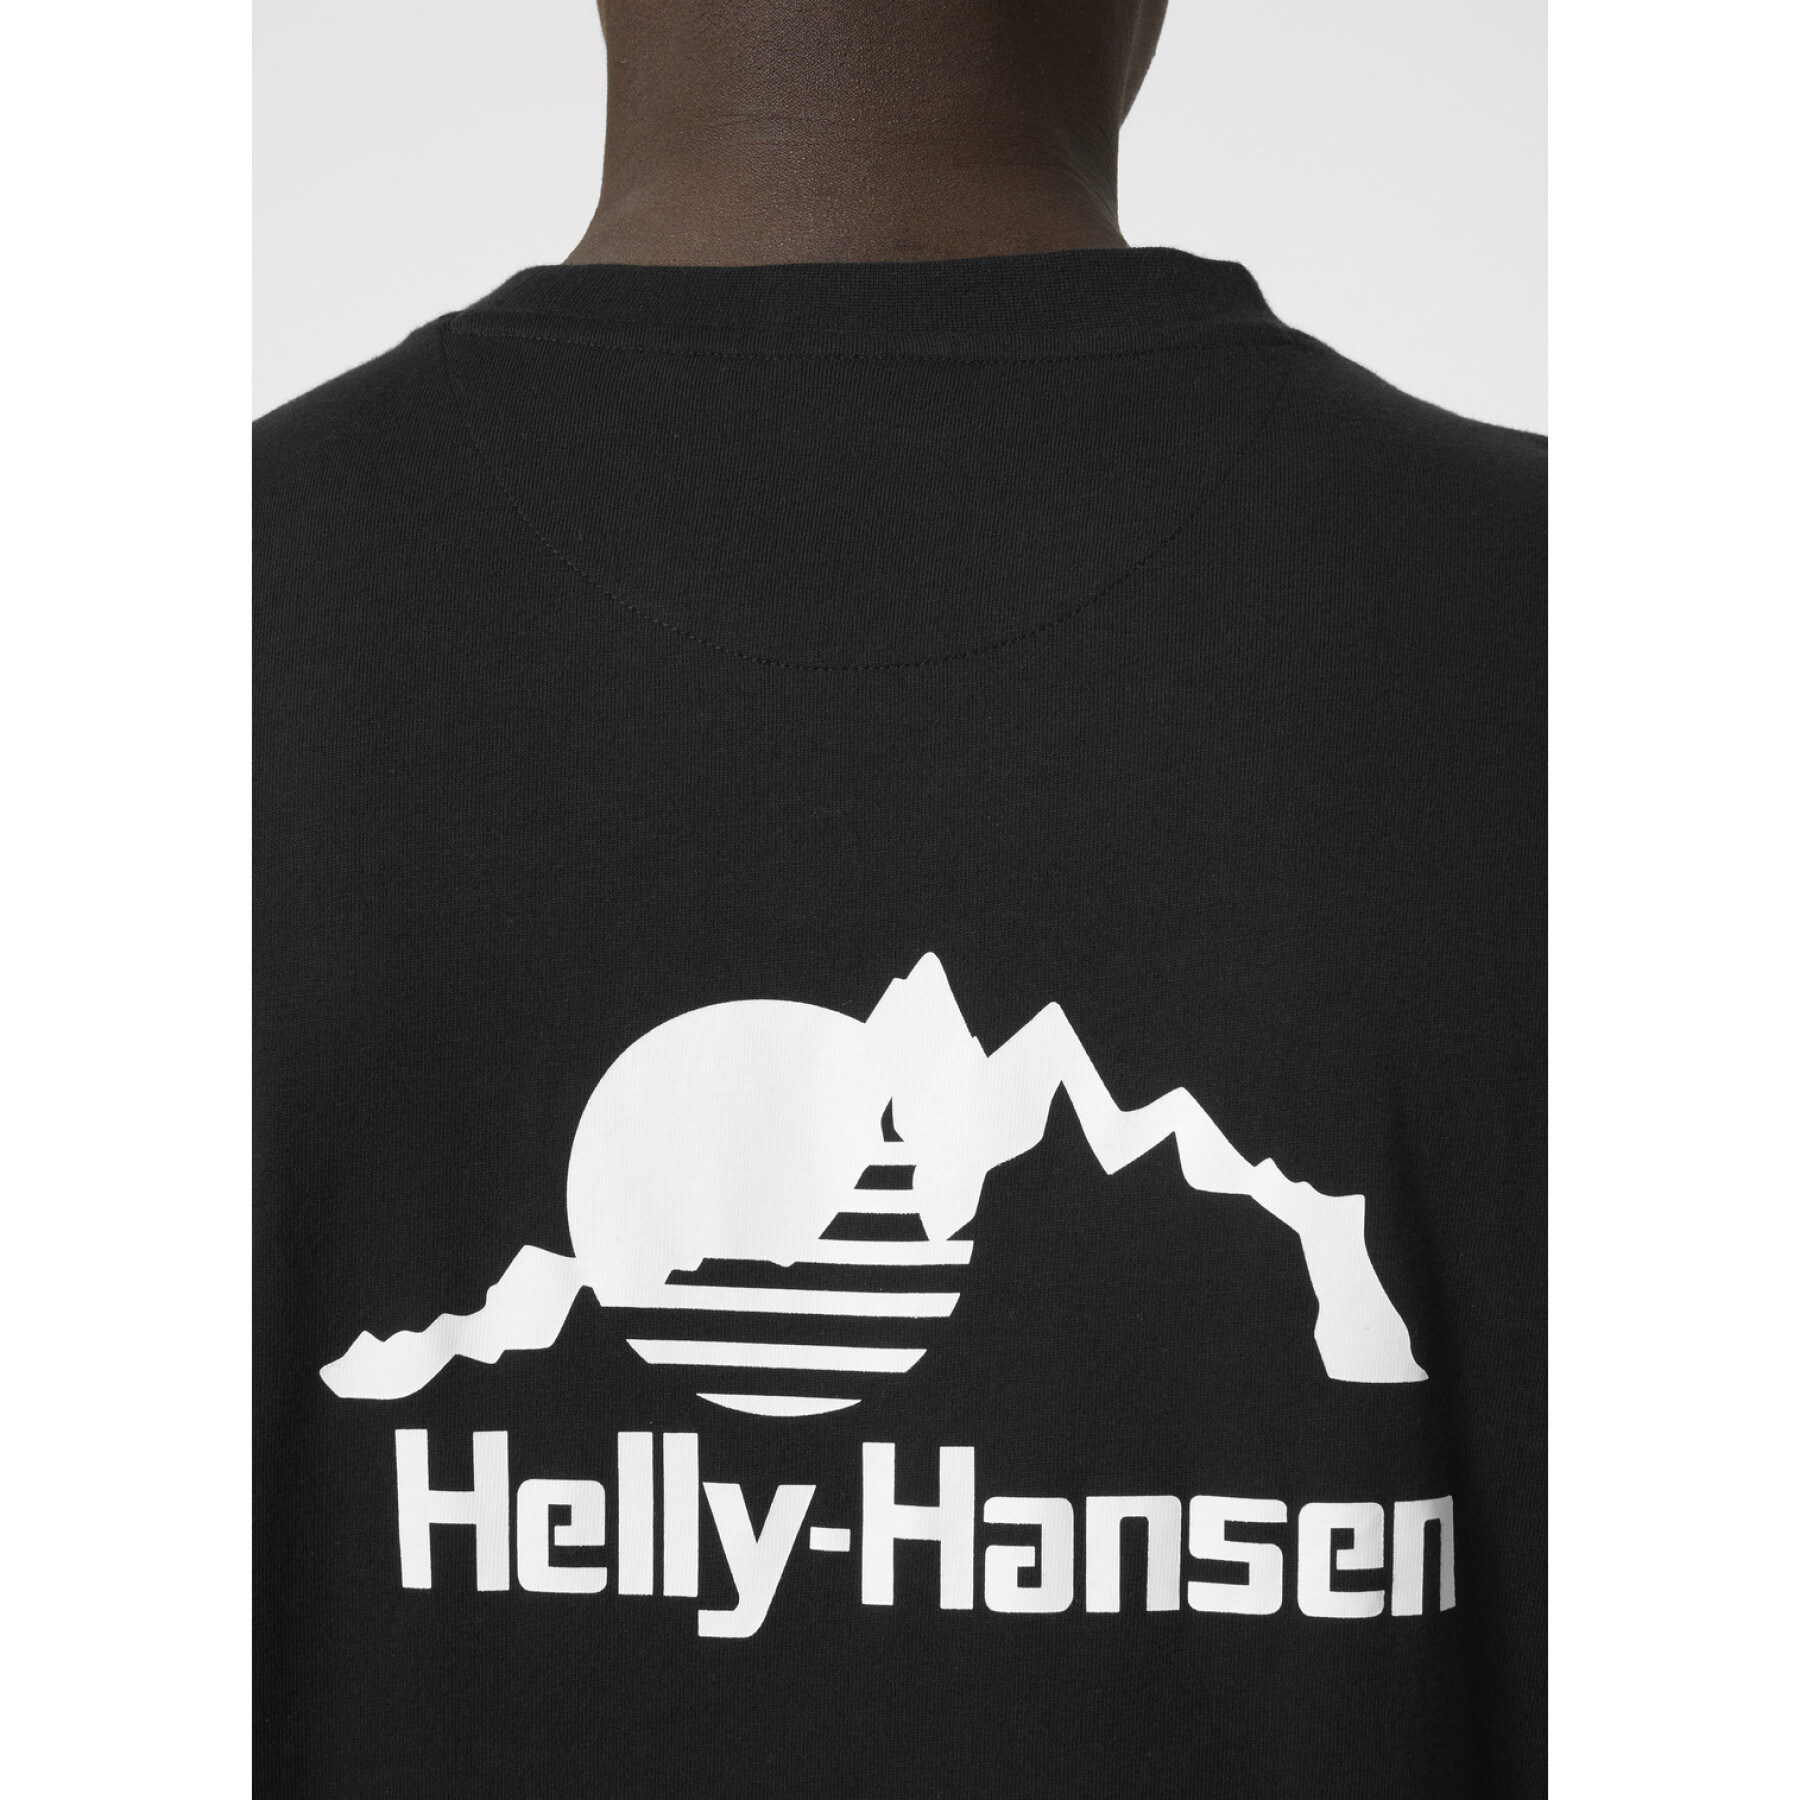 Camiseta Helly Hansen yu20 ls